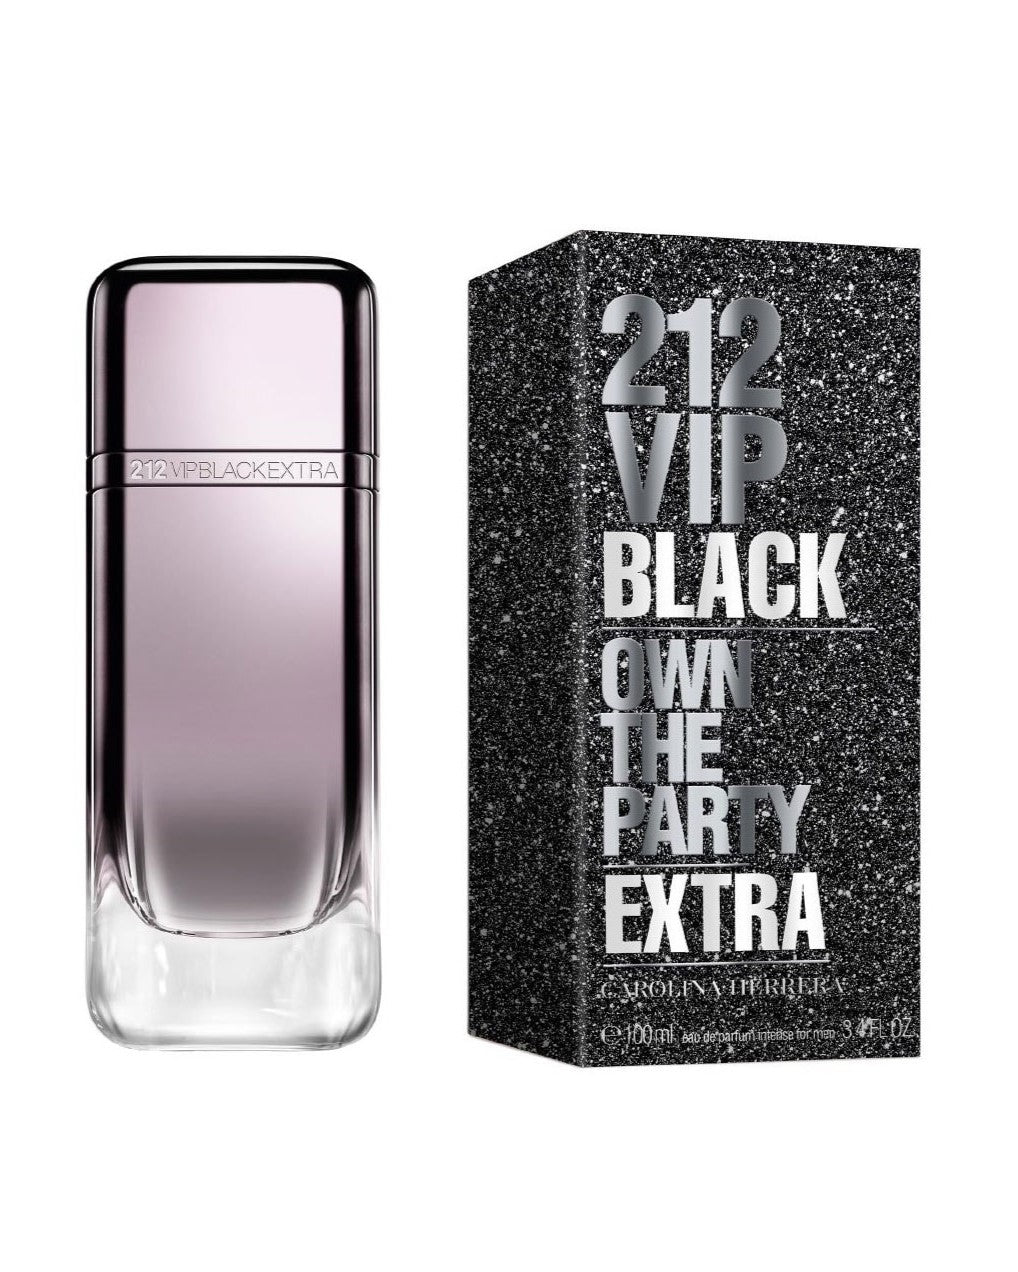 212 VIP Men Black Extra Eau de Parfum Spray, 3.4 oz